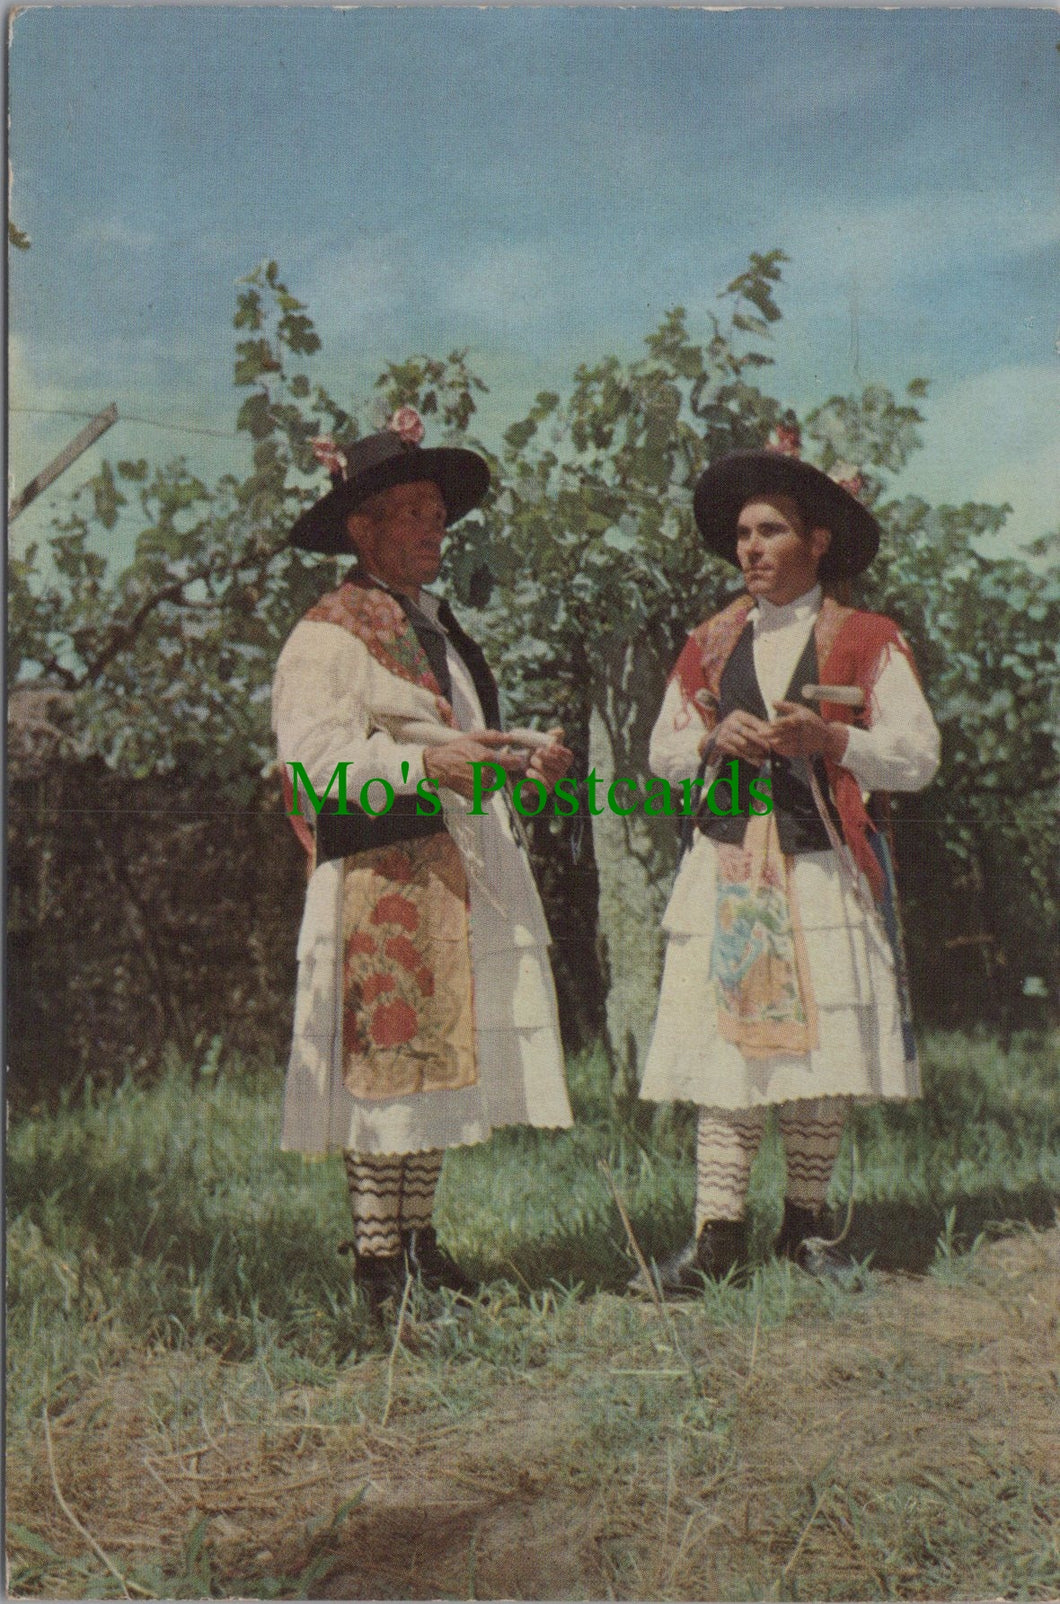 Portuguese Costumes, Folklore, Portugal